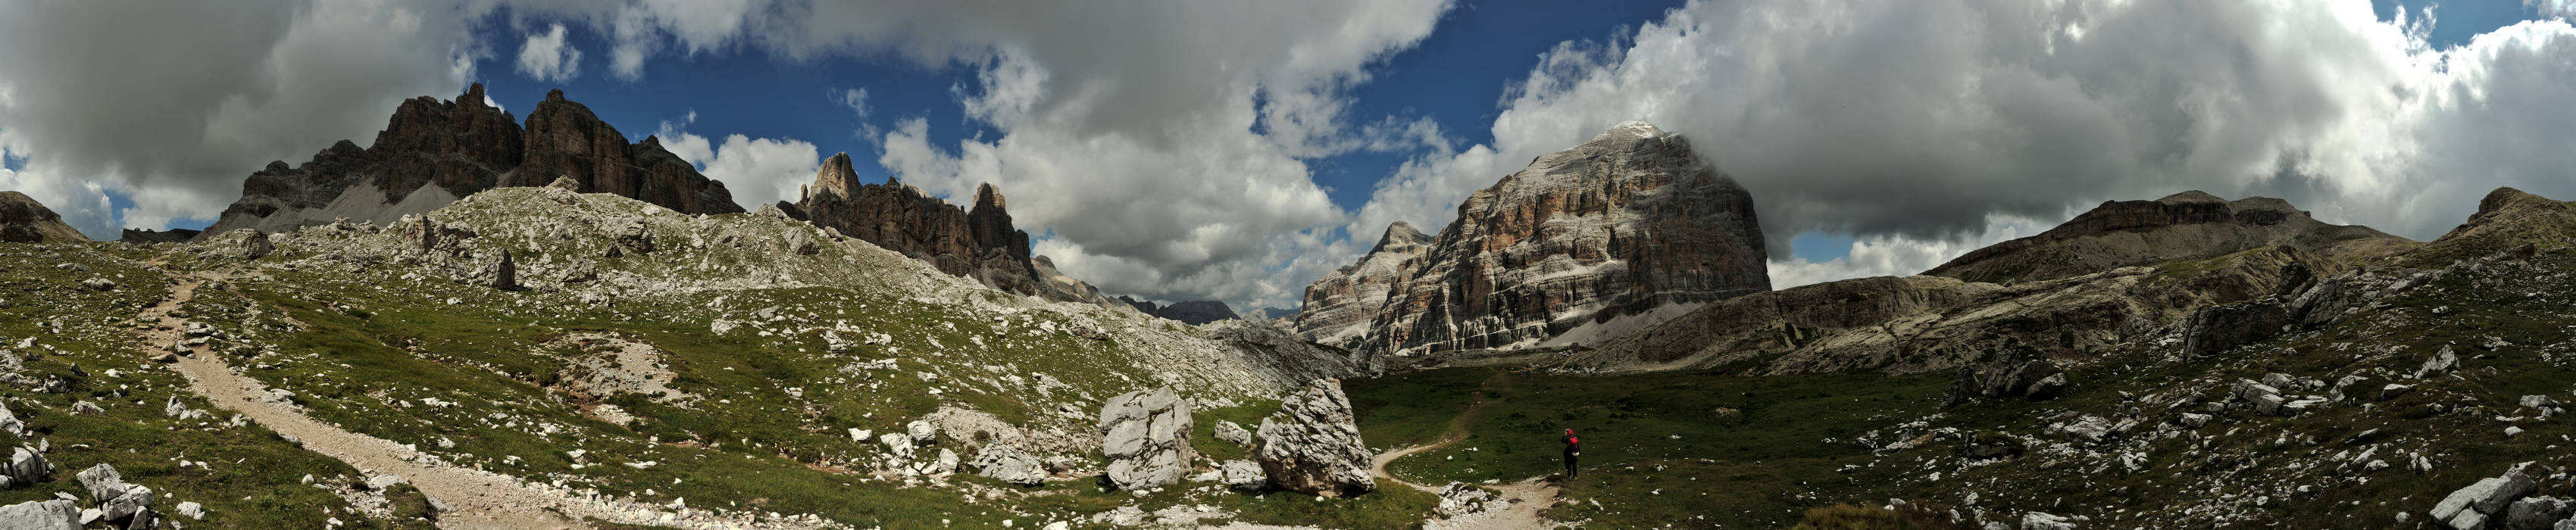 Dolomiti Falzarego Lagazuoi, Cortina d'Ampezzo